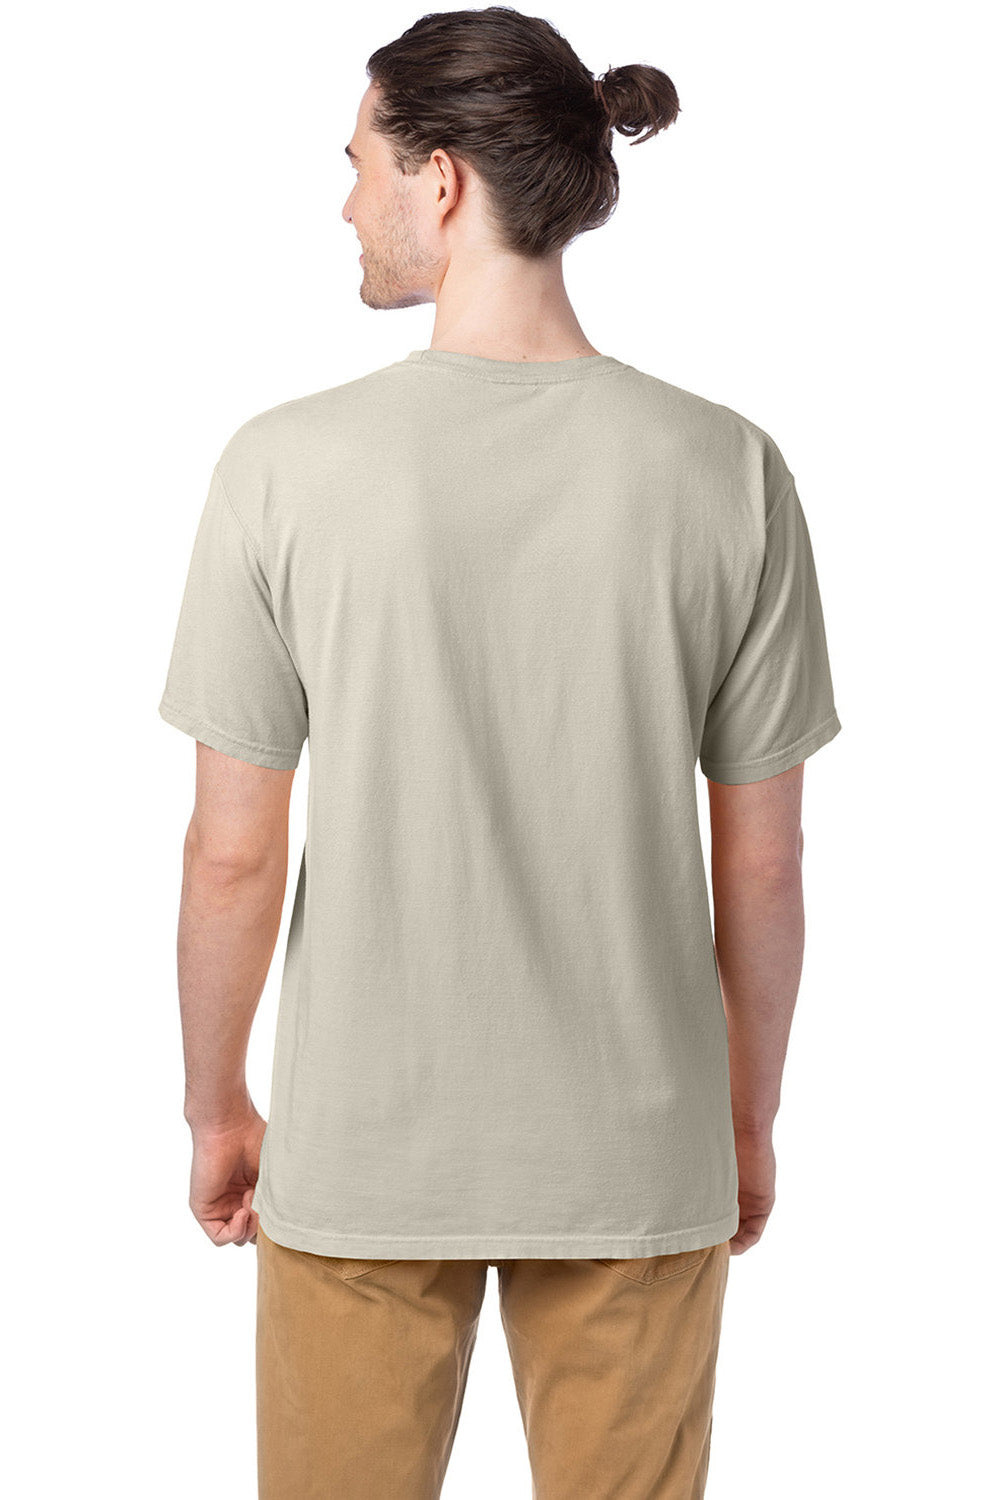 ComfortWash by Hanes GDH100 Mens Short Sleeve Crewneck T-Shirt Parchment Back